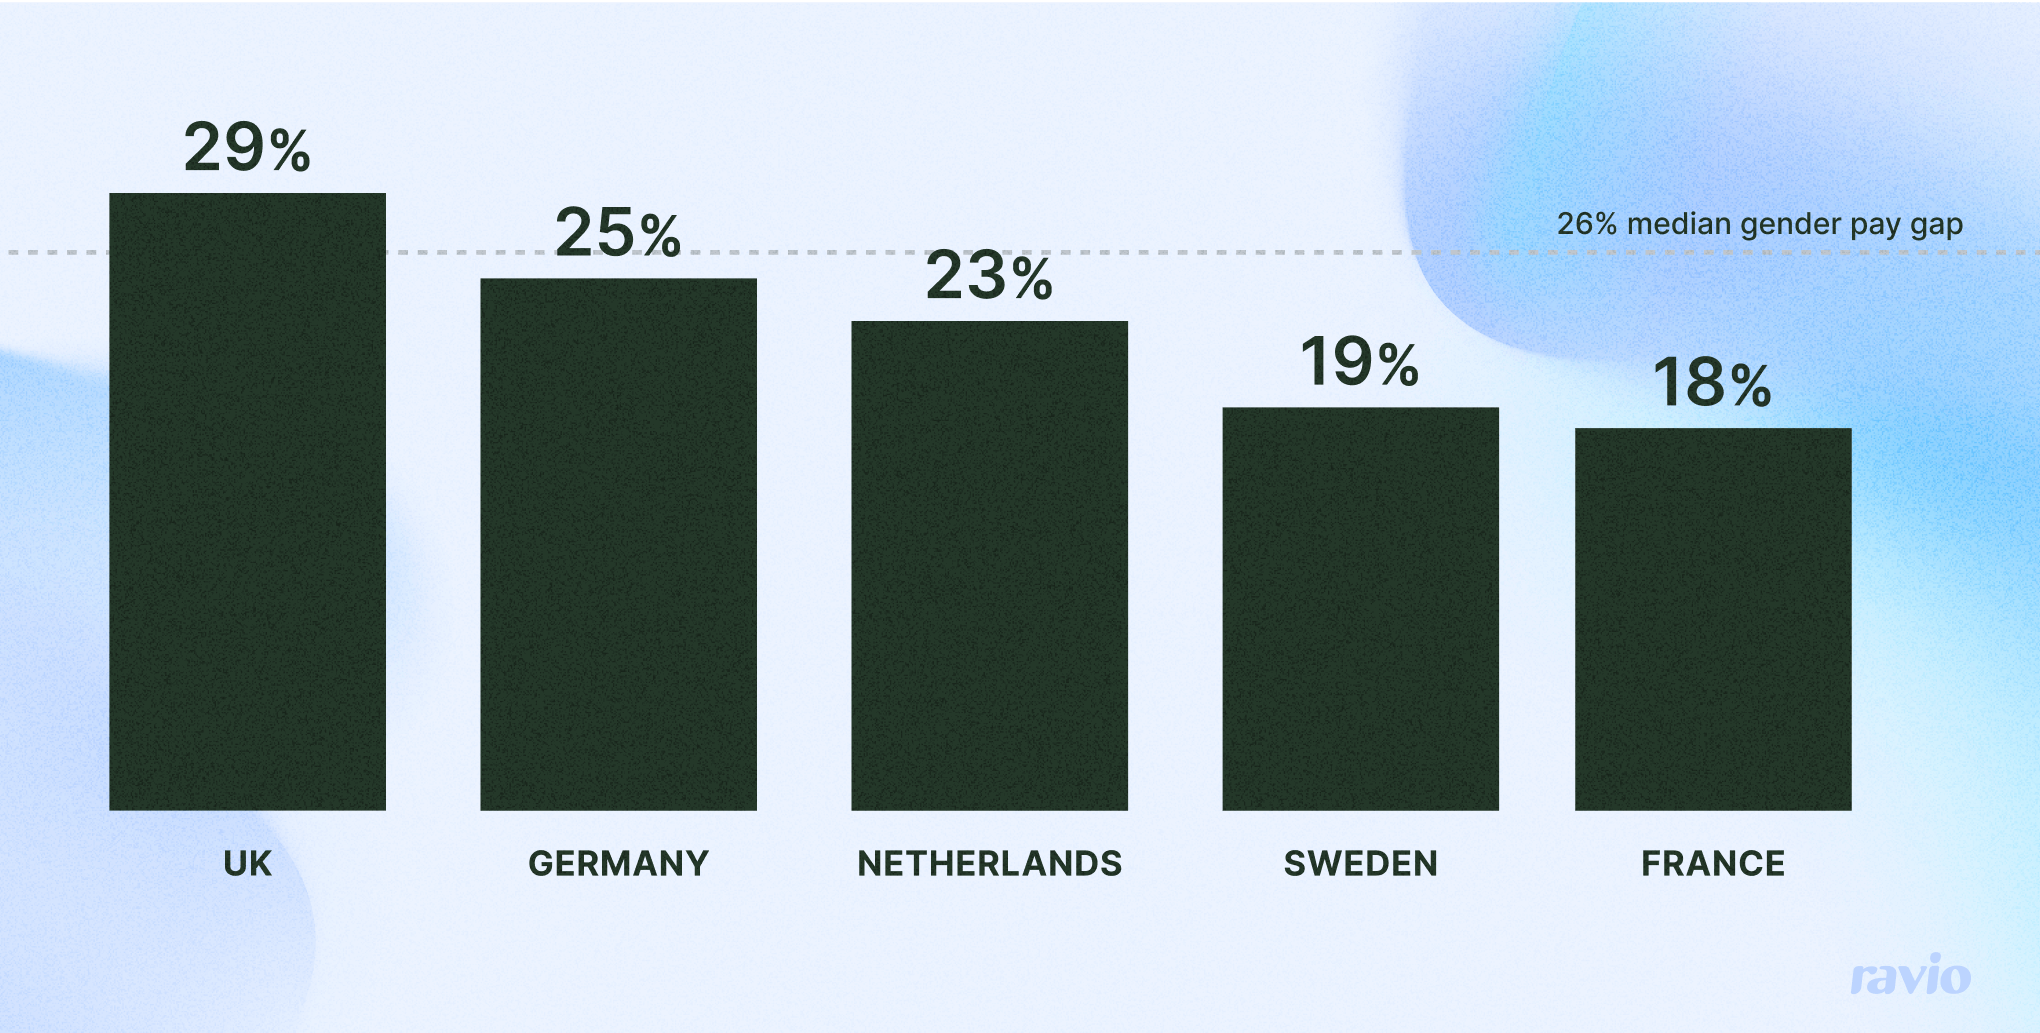 Gender pay gap across Europe. UK 29%, Germany 25%, Netherlands 23%, Sweden 19%, France 18%.